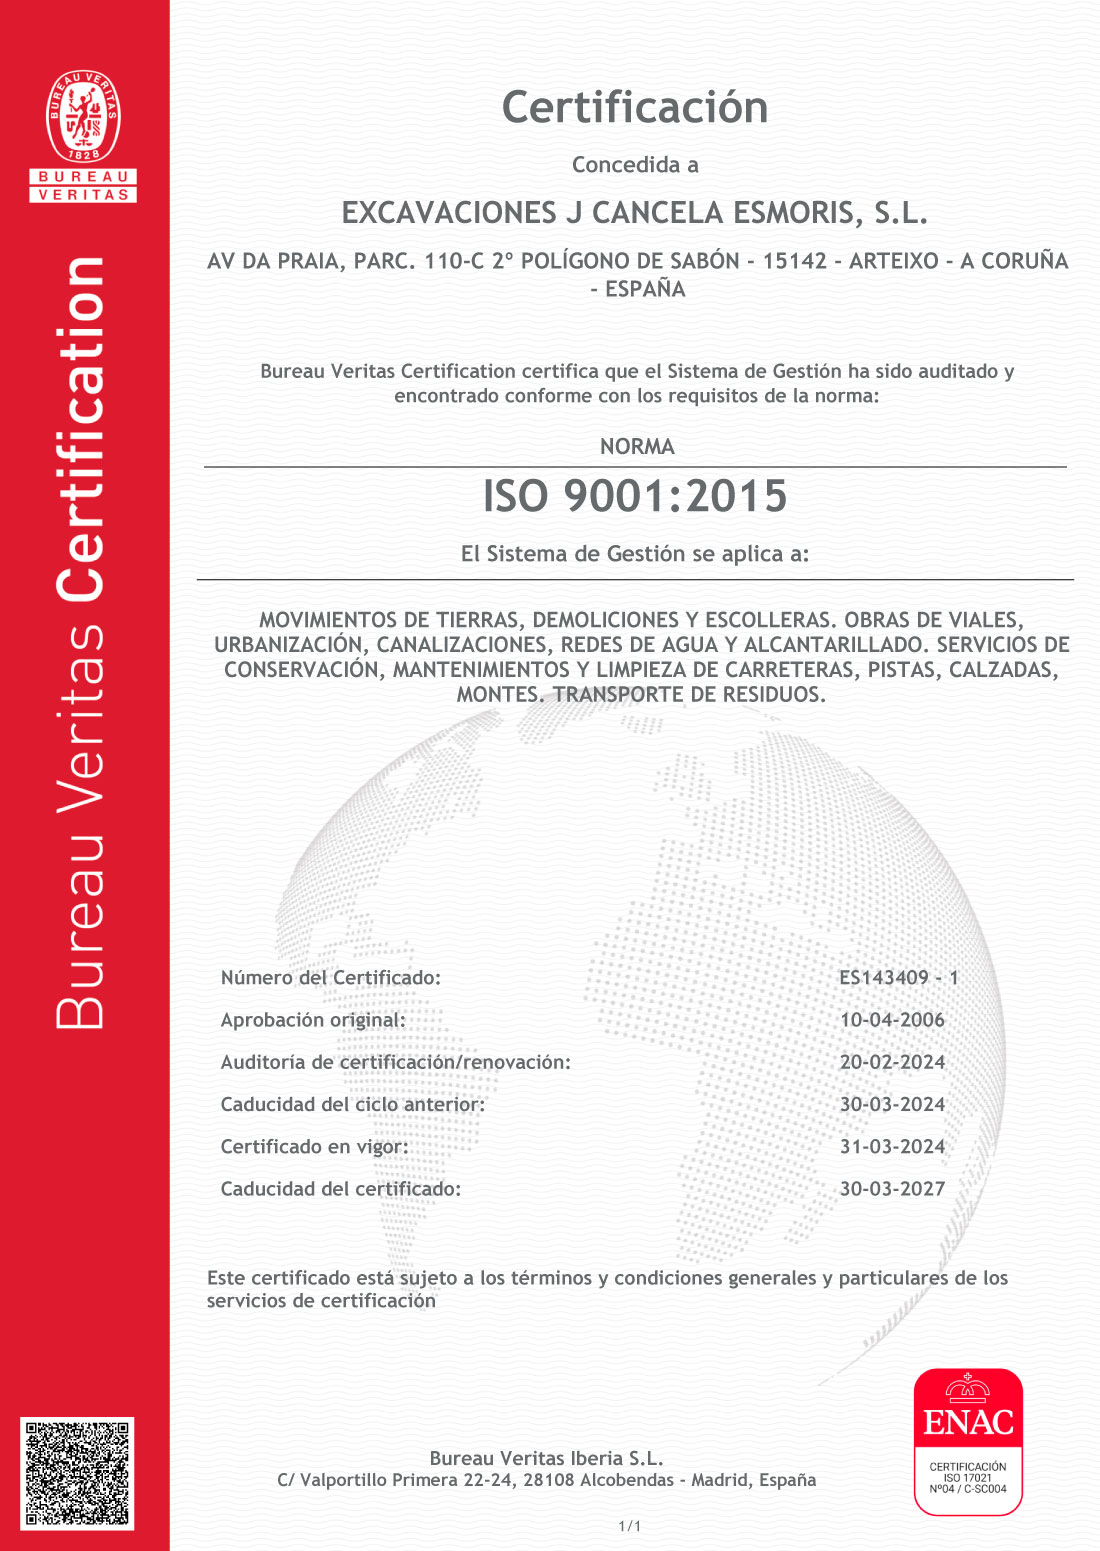 Certificados de Excavaciones J. Cancela Esmorís, S.L. en A Coruña